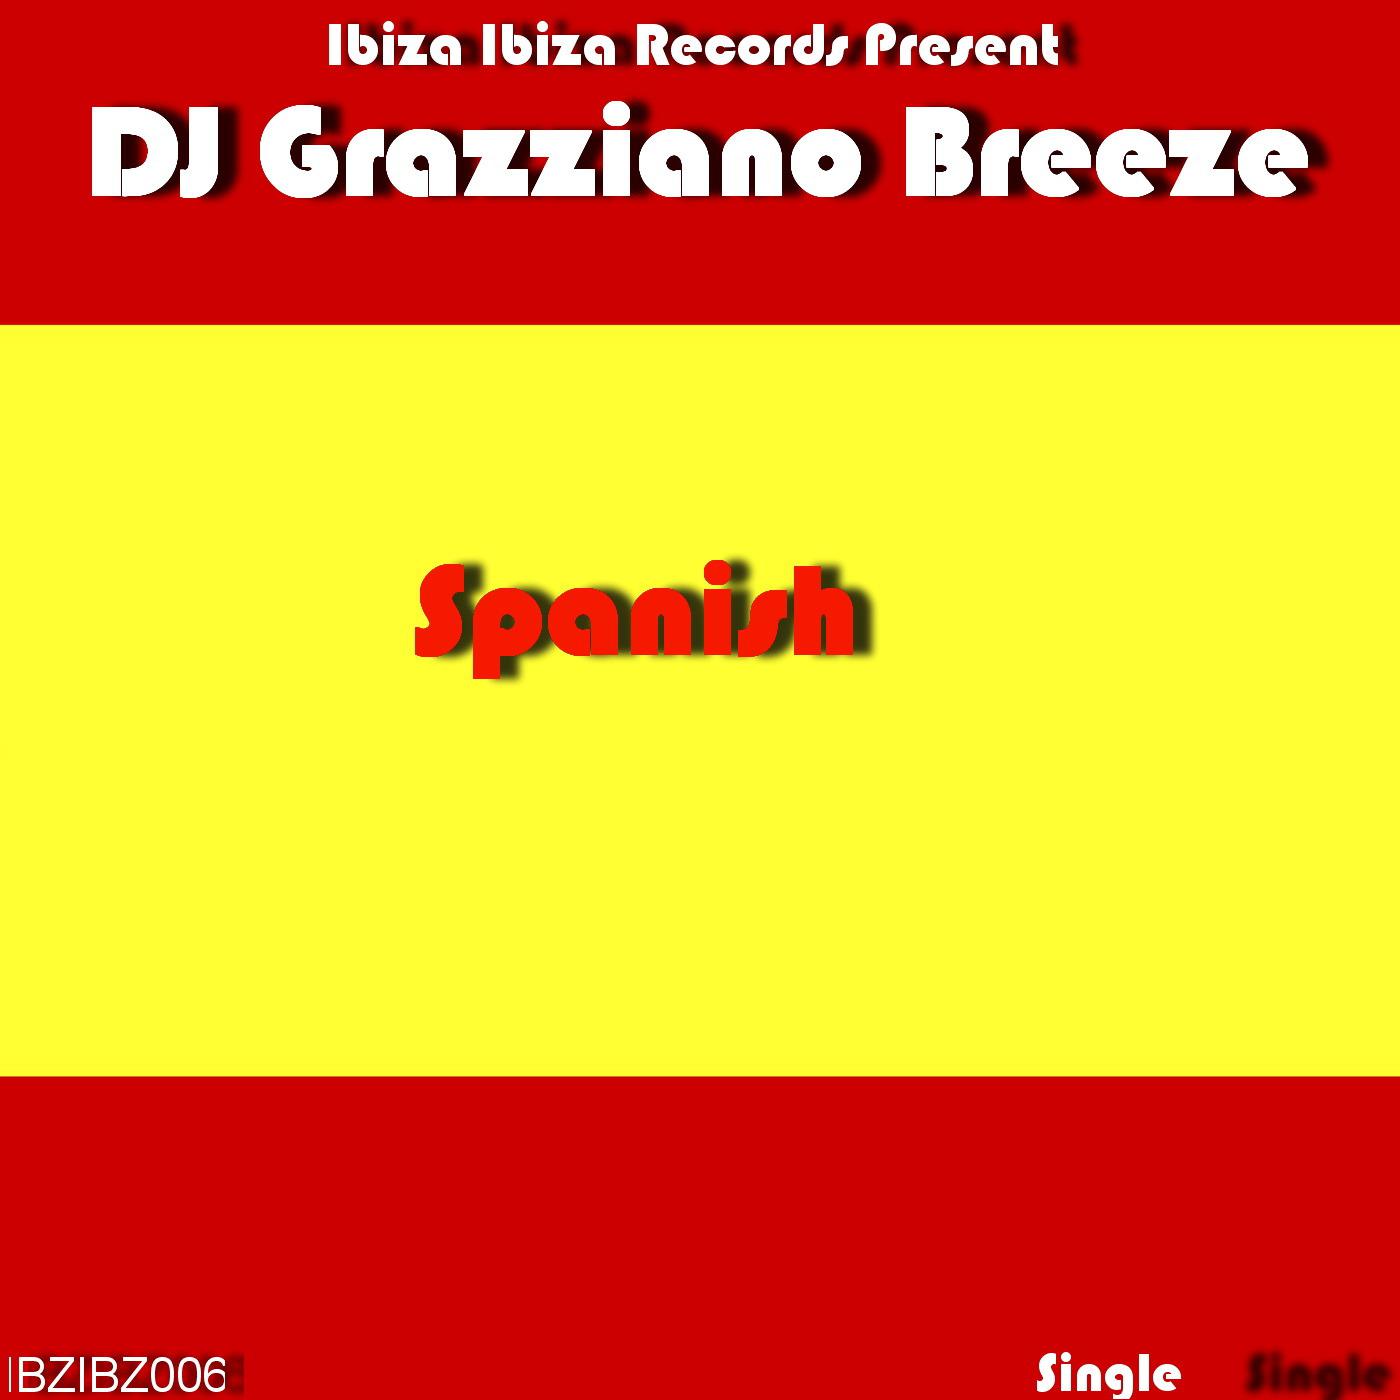 DJ Grazziano Breeze - Spanish